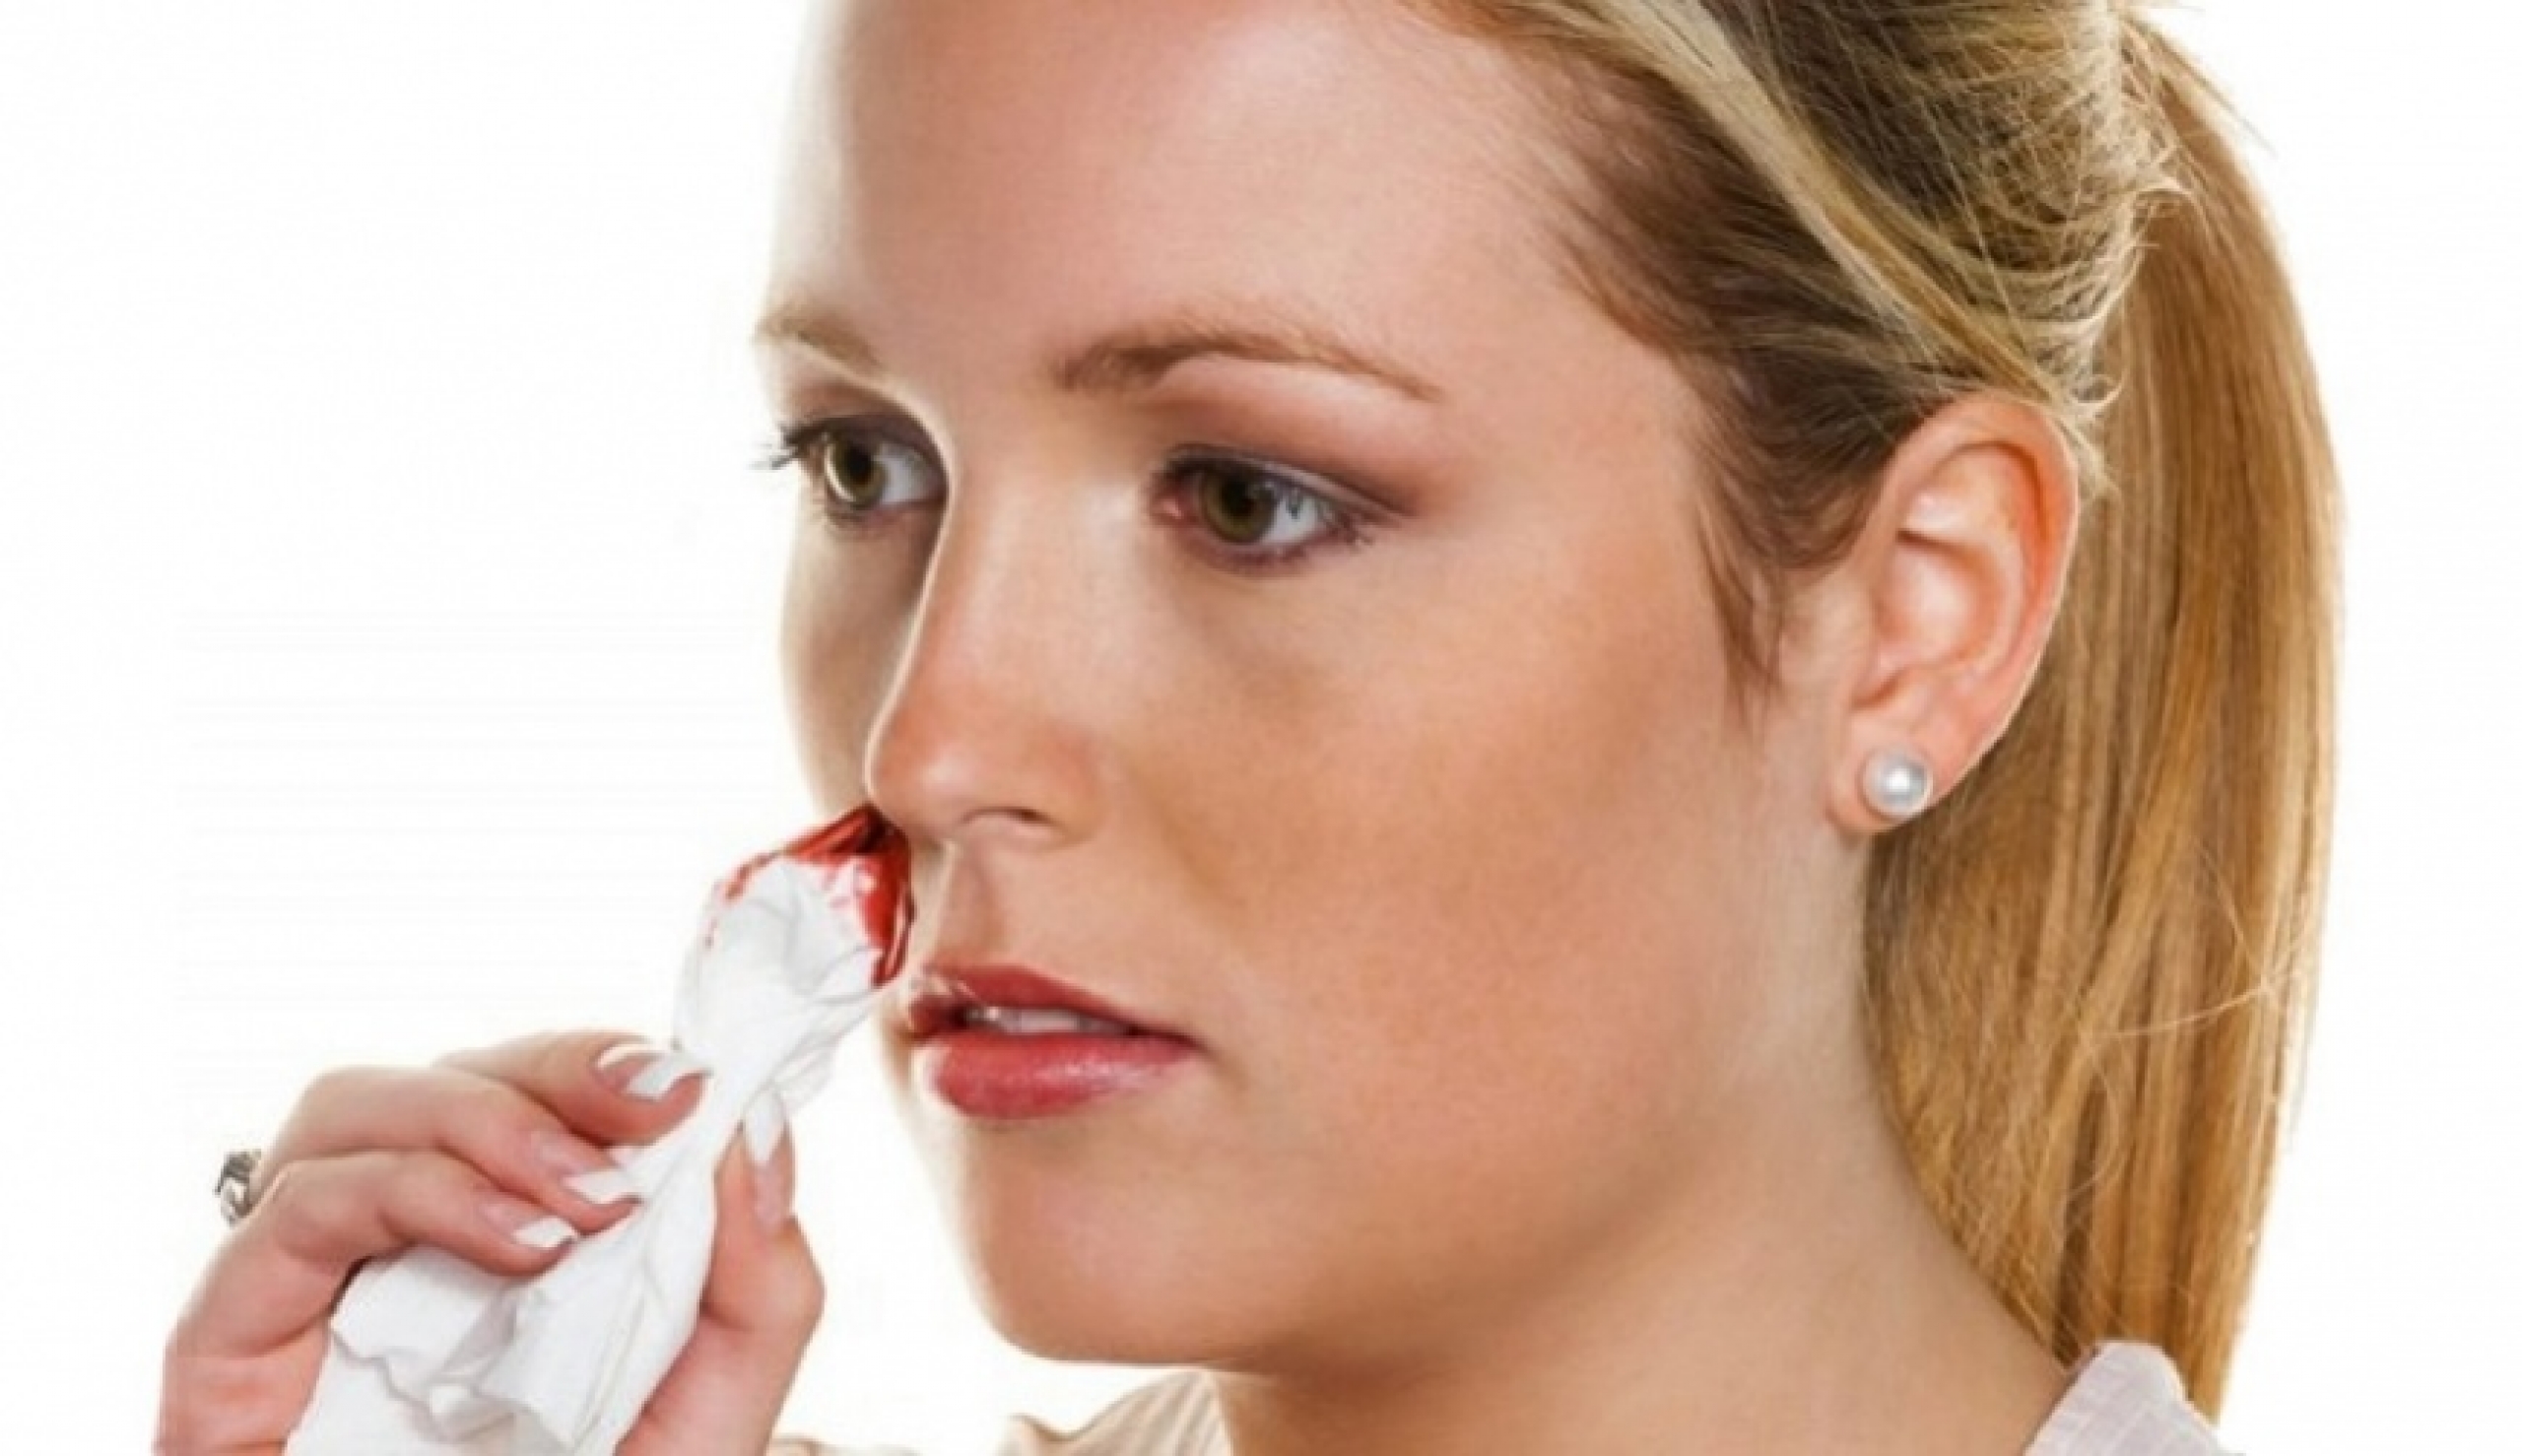 Причины и первая помощь при носовом кровотечении